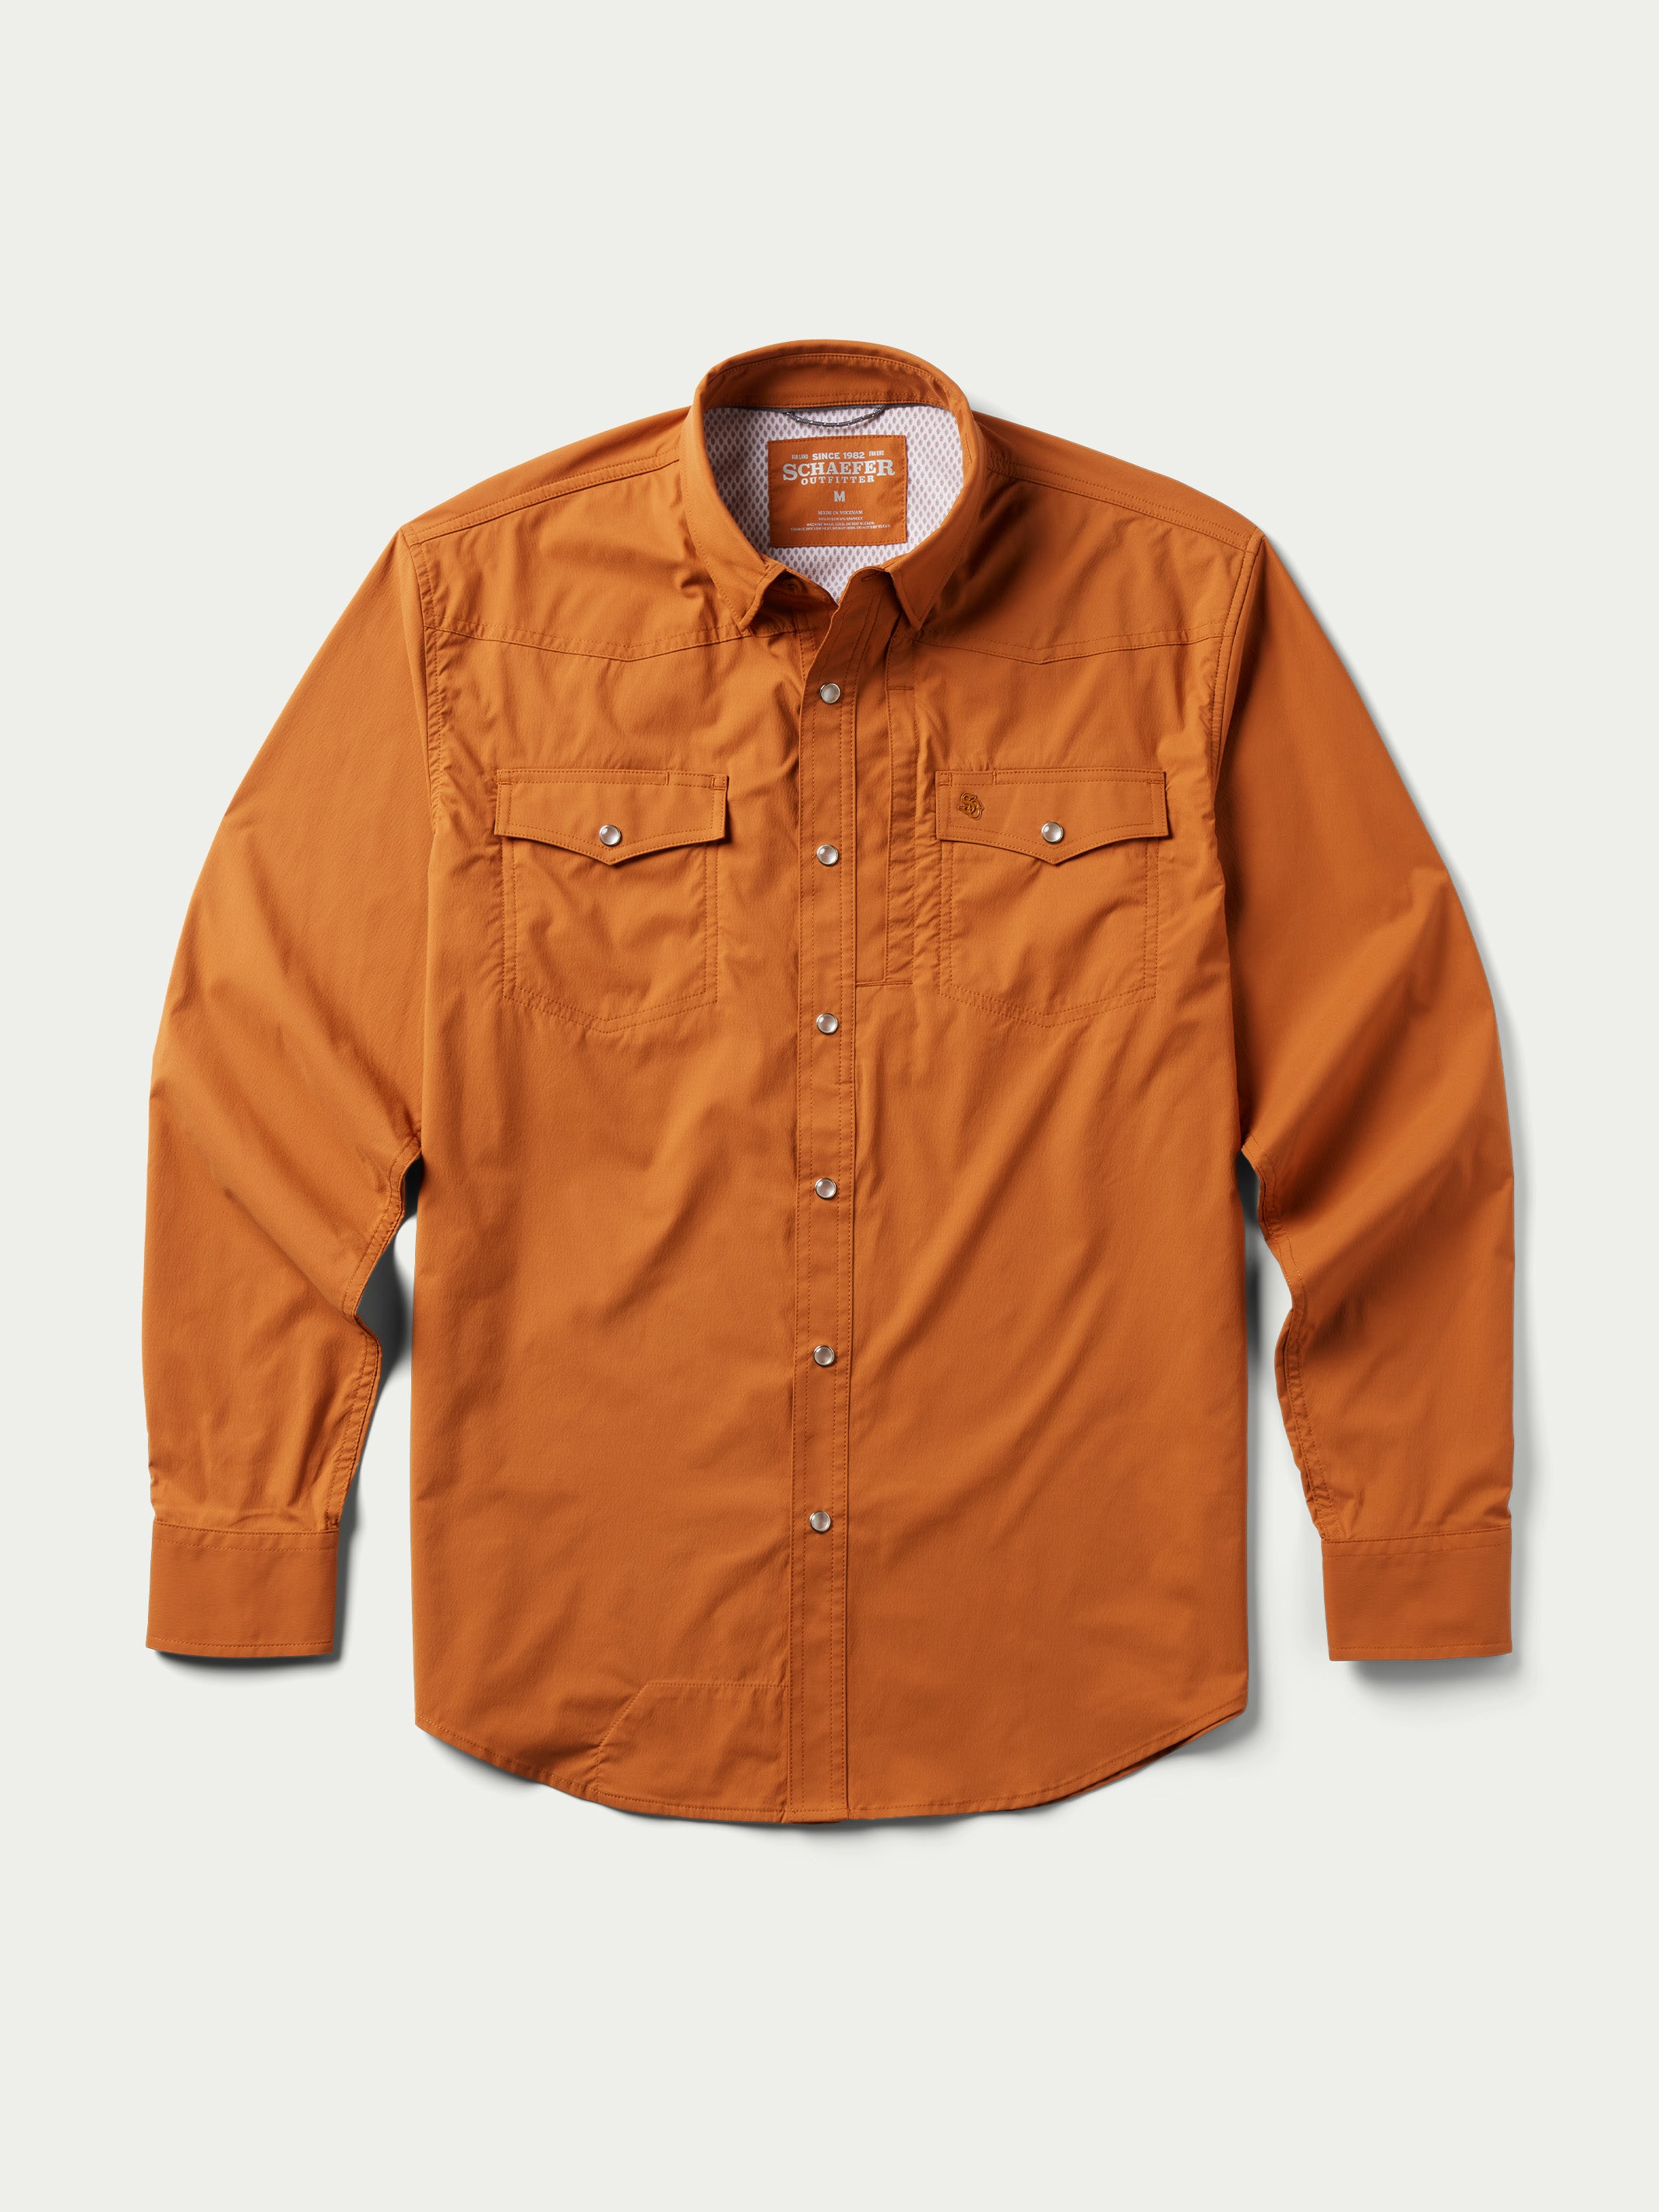 RangeTek Western Guide Snap Shirt | Schaefer Outfitter